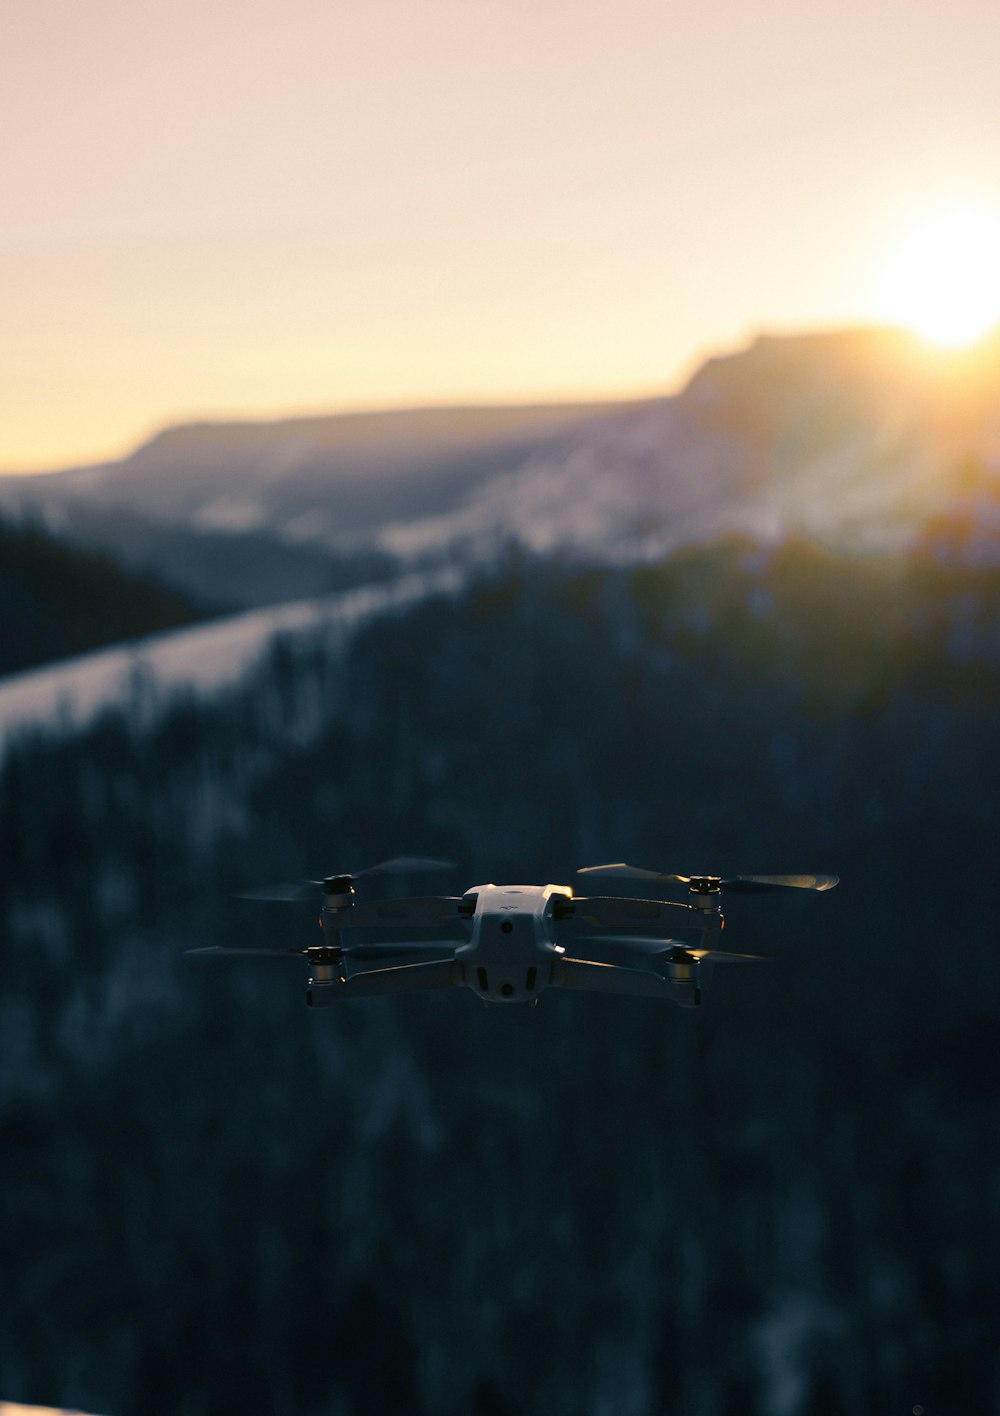 drone branco e preto voando sobre as árvores verdes durante o dia